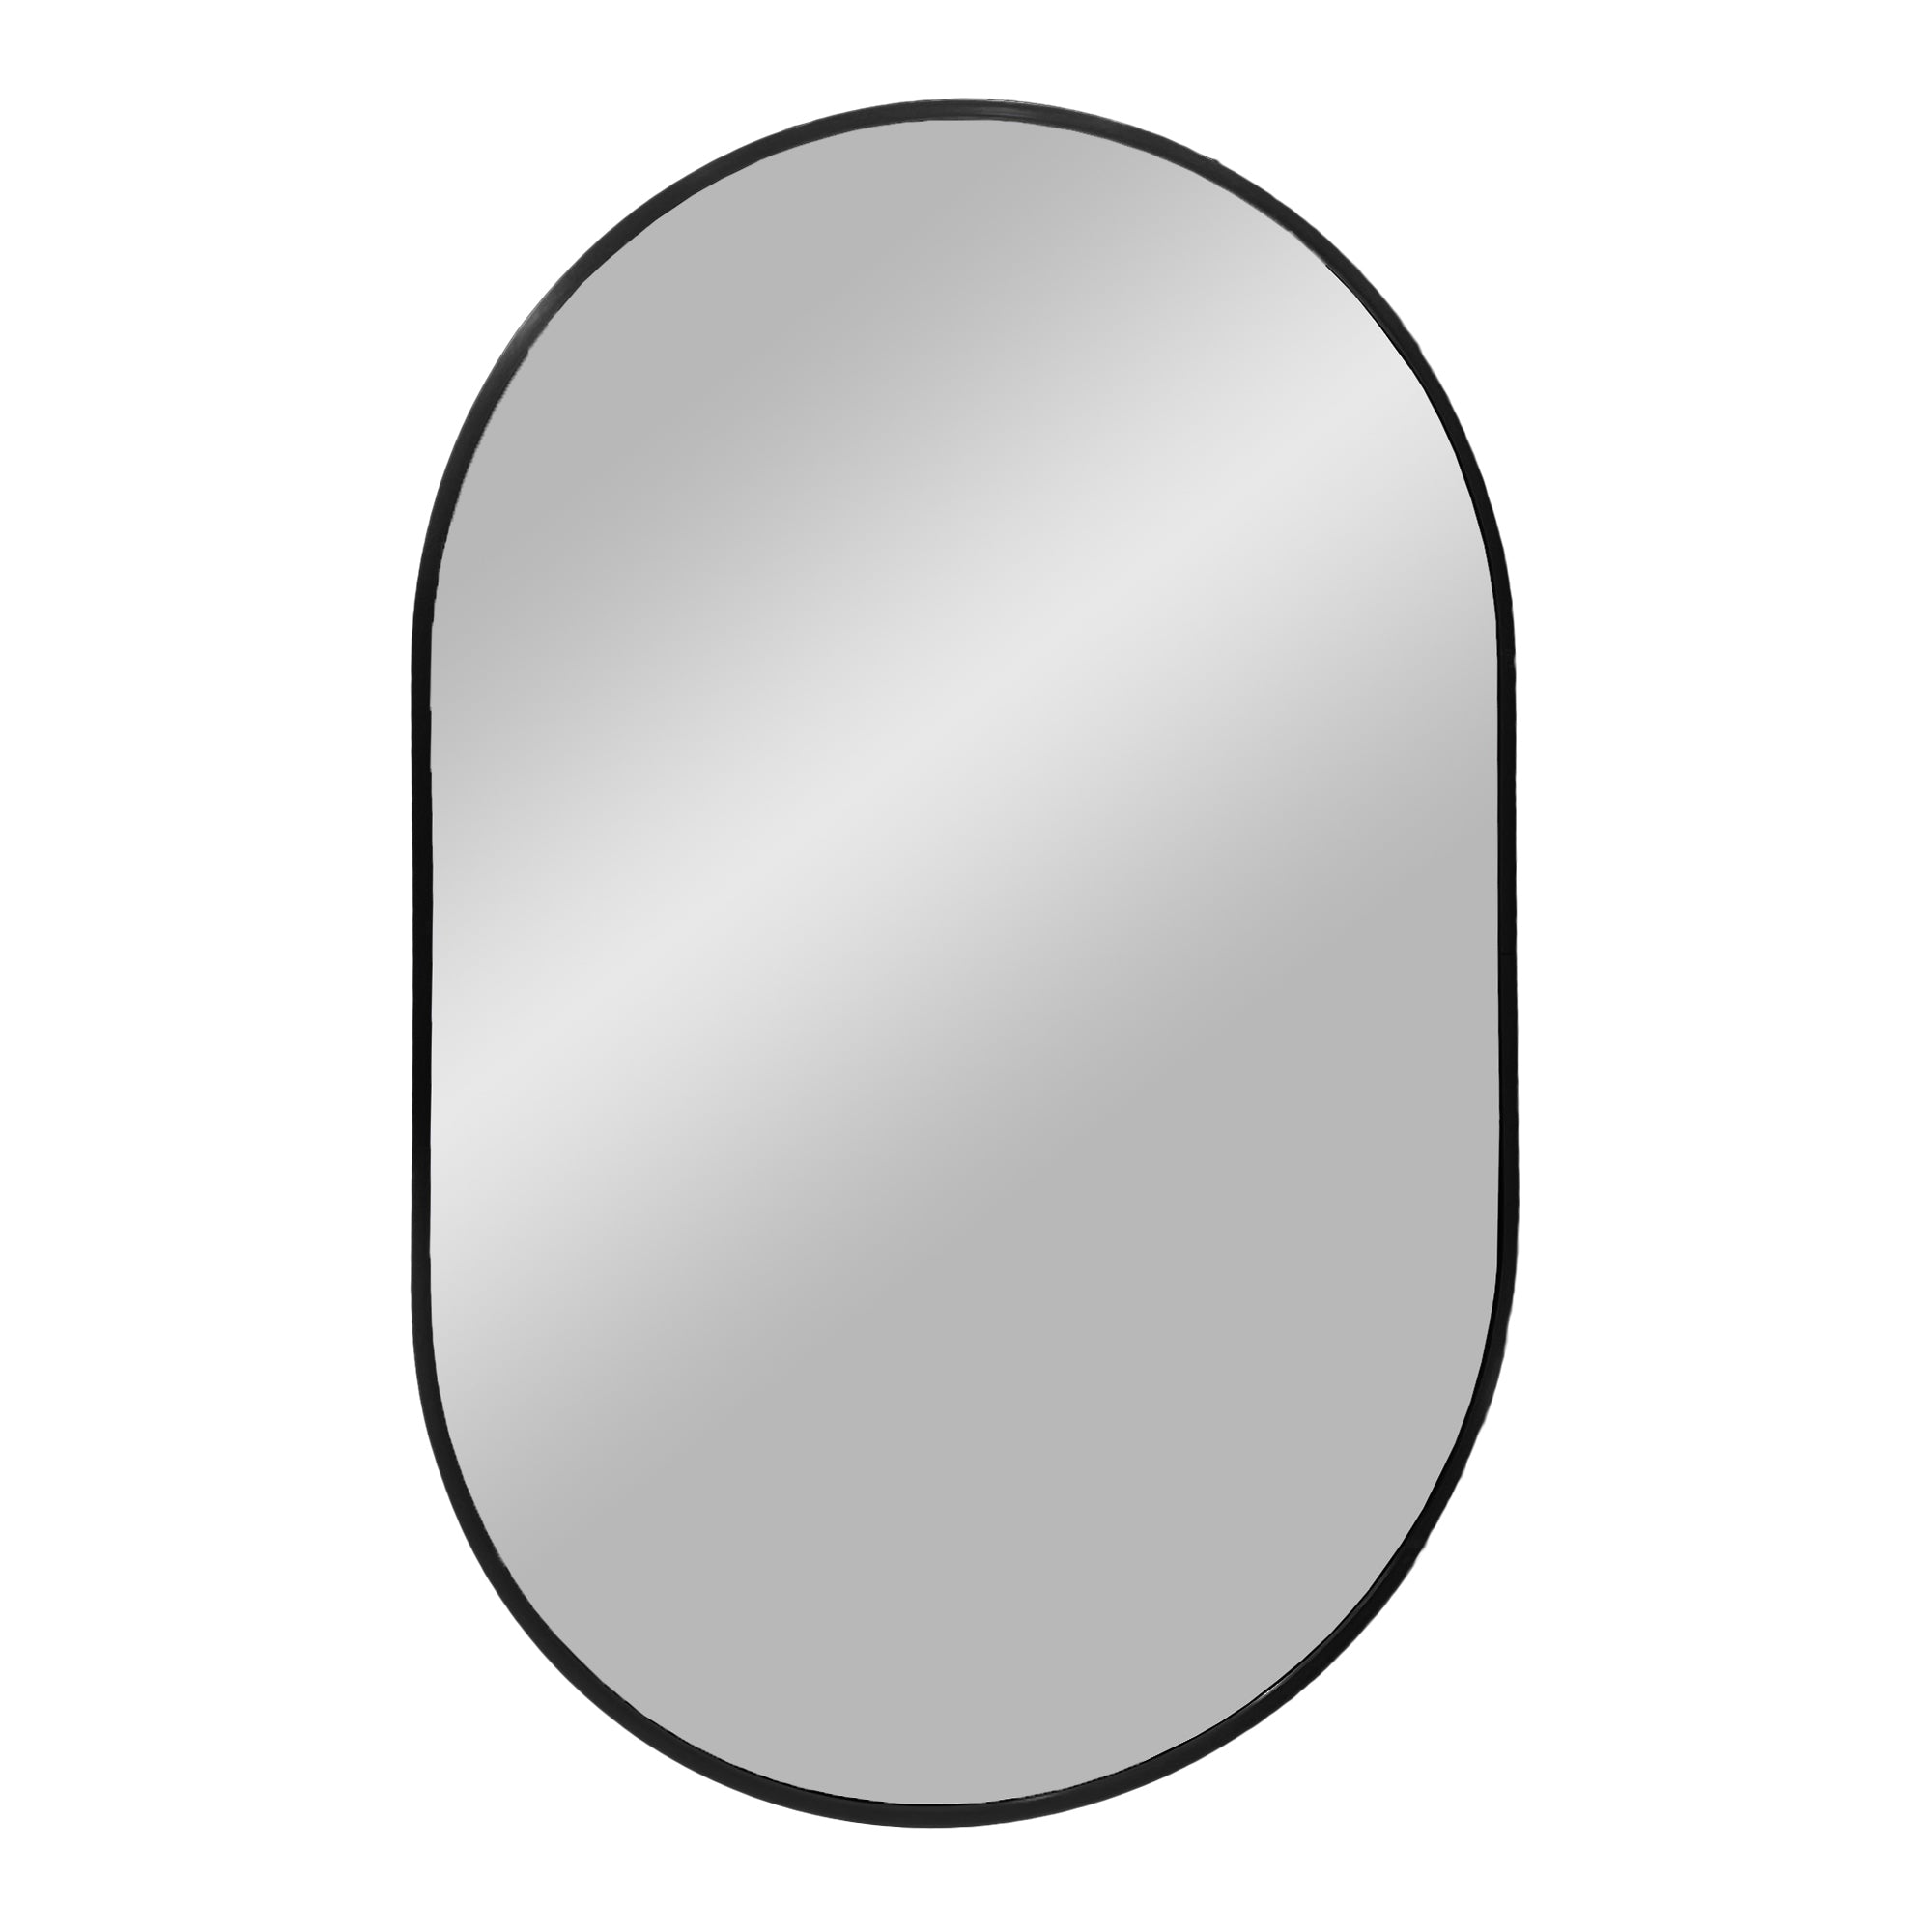 12: Madrid Spejl - Spejl i aluminium, sort, 50x80 cm